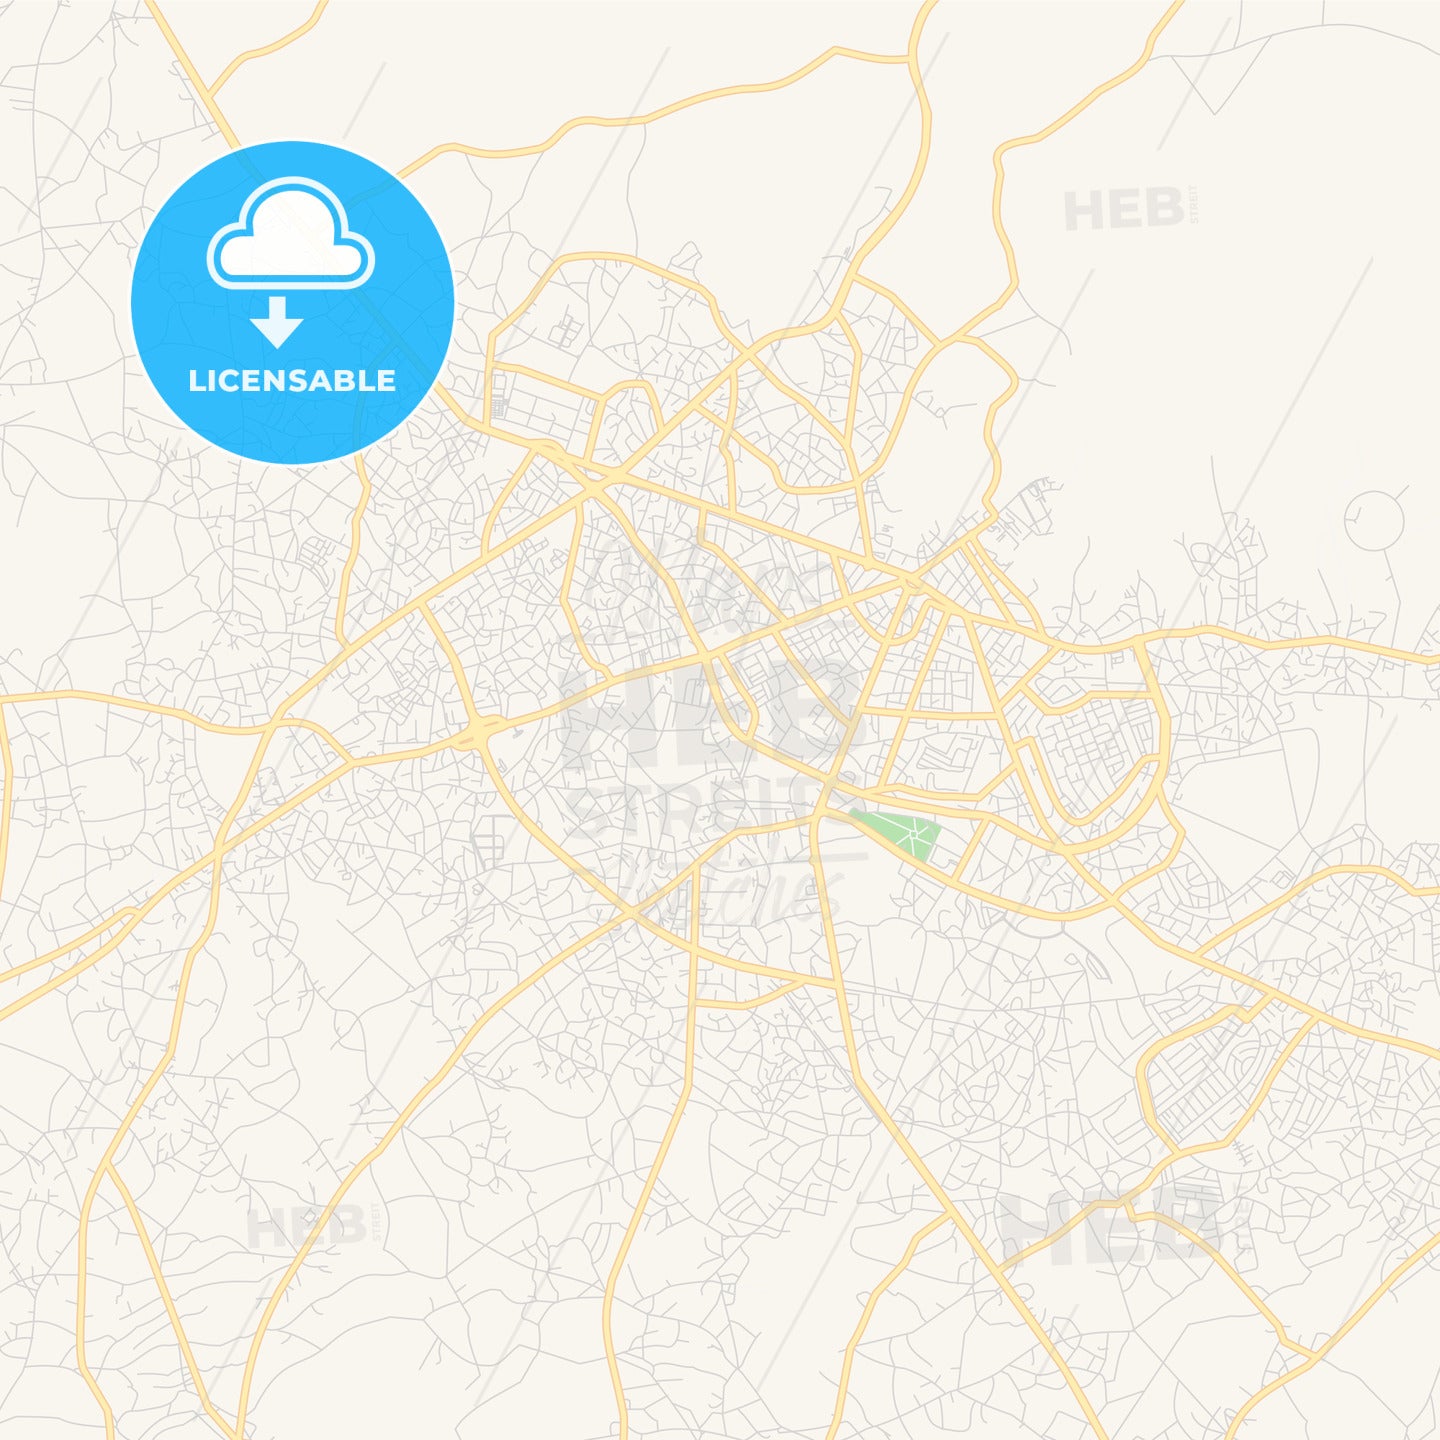 Printable street map of Uyo, Nigeria